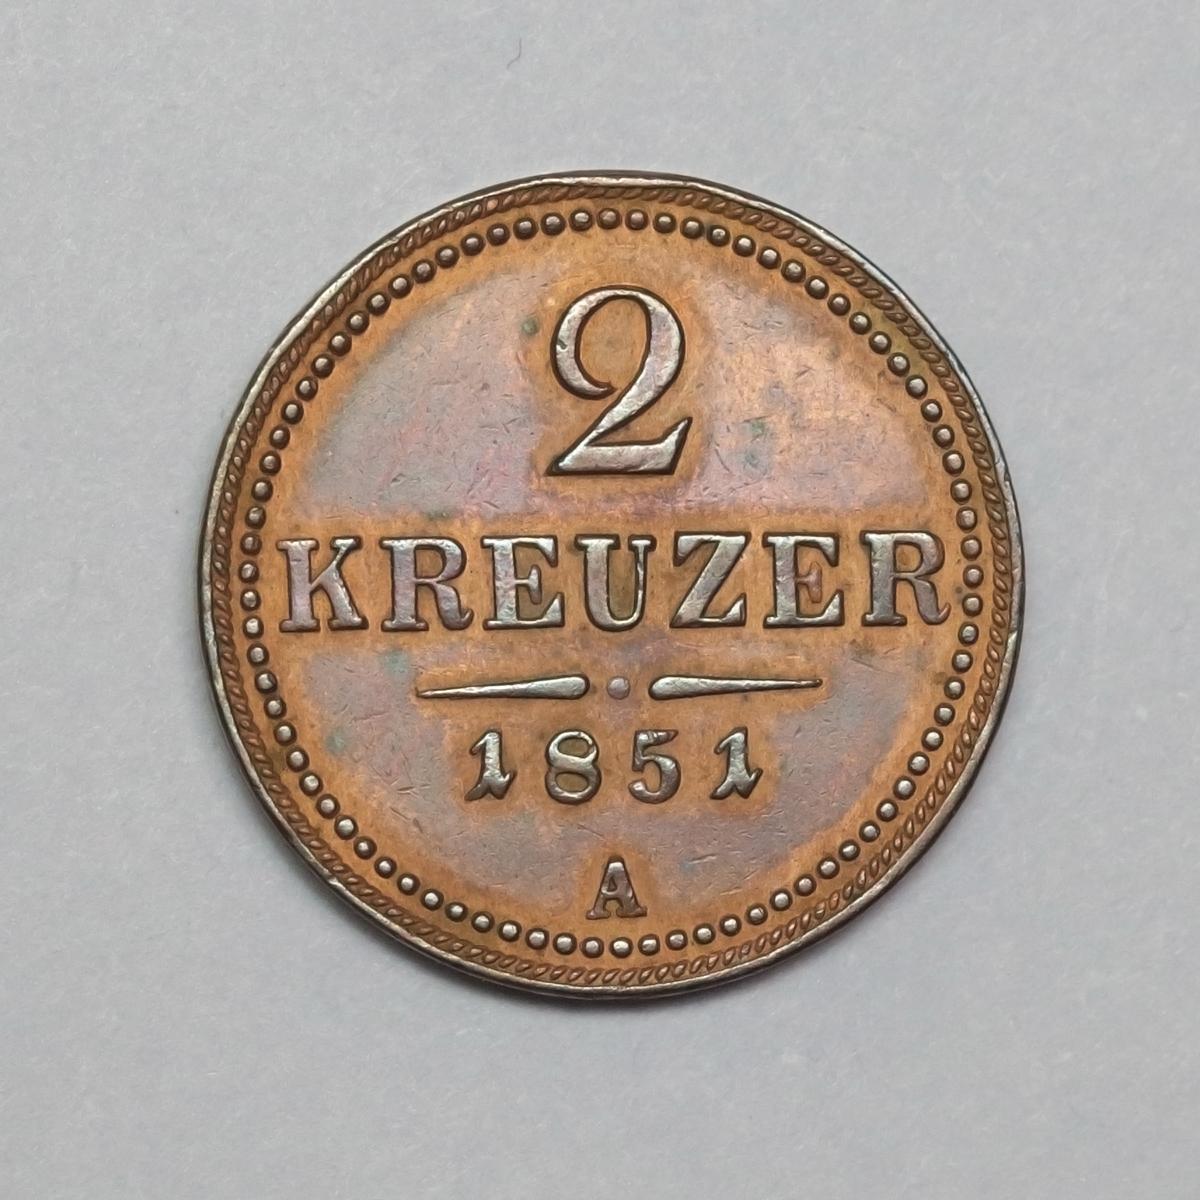 2 kreuzer 1851 A - Numismatika